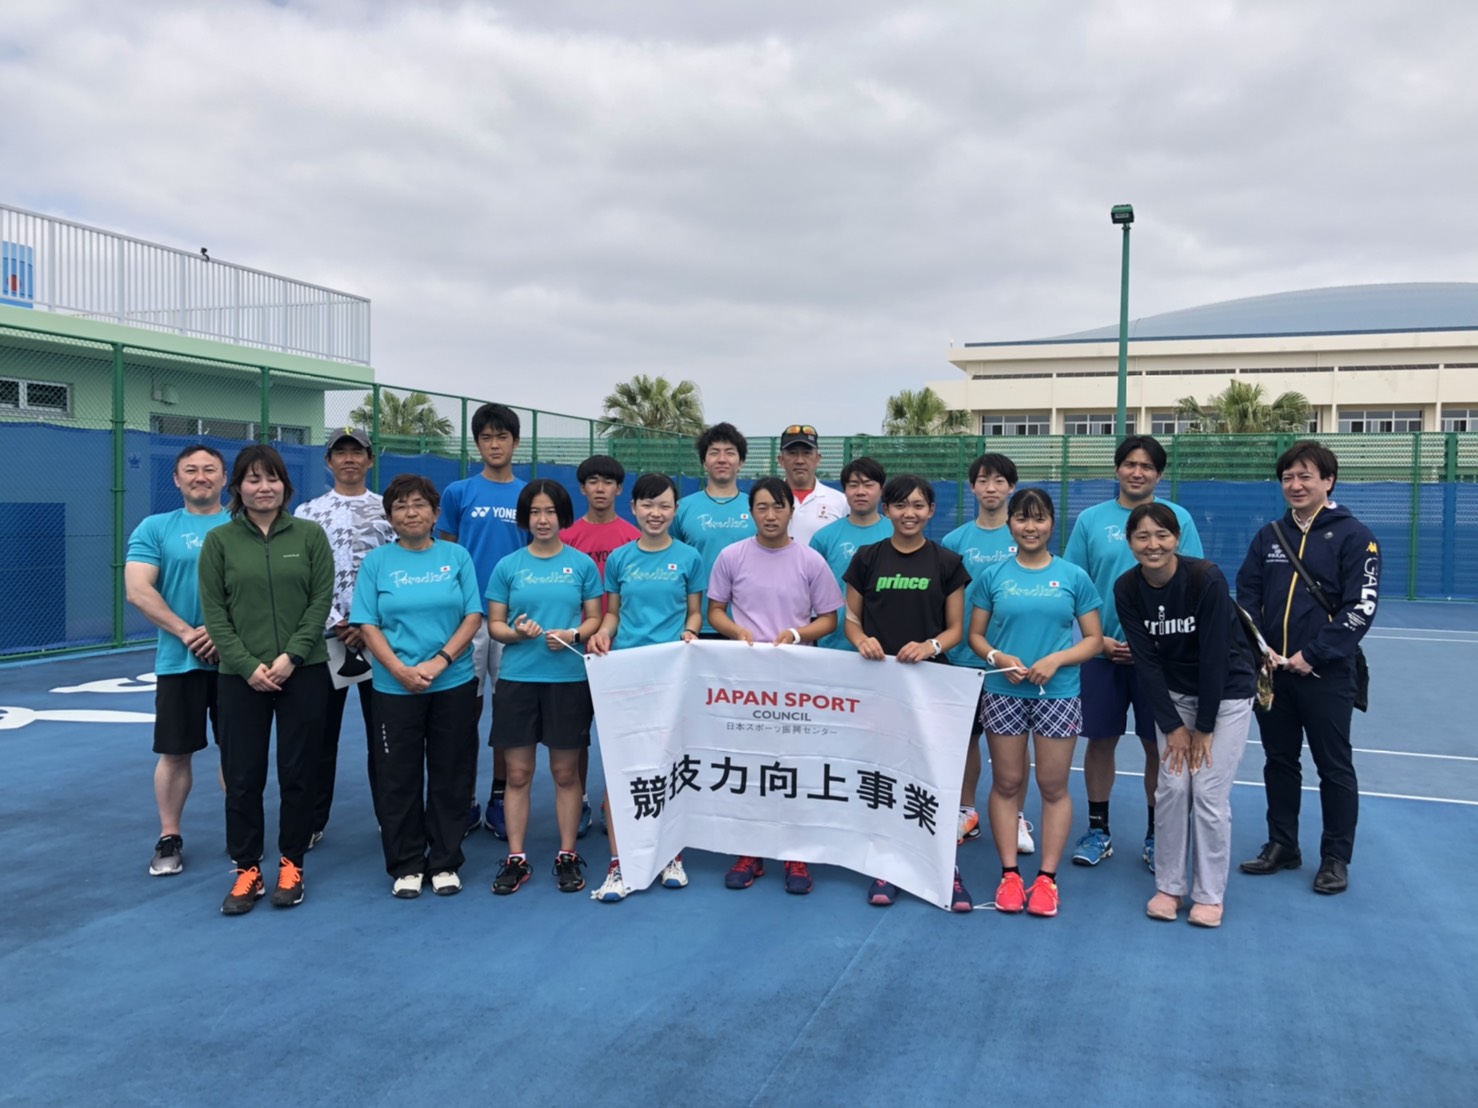 デフテニス日本代表合宿サポート 練習 プロテニスプレイヤー宮村美紀オフィシャルブログ